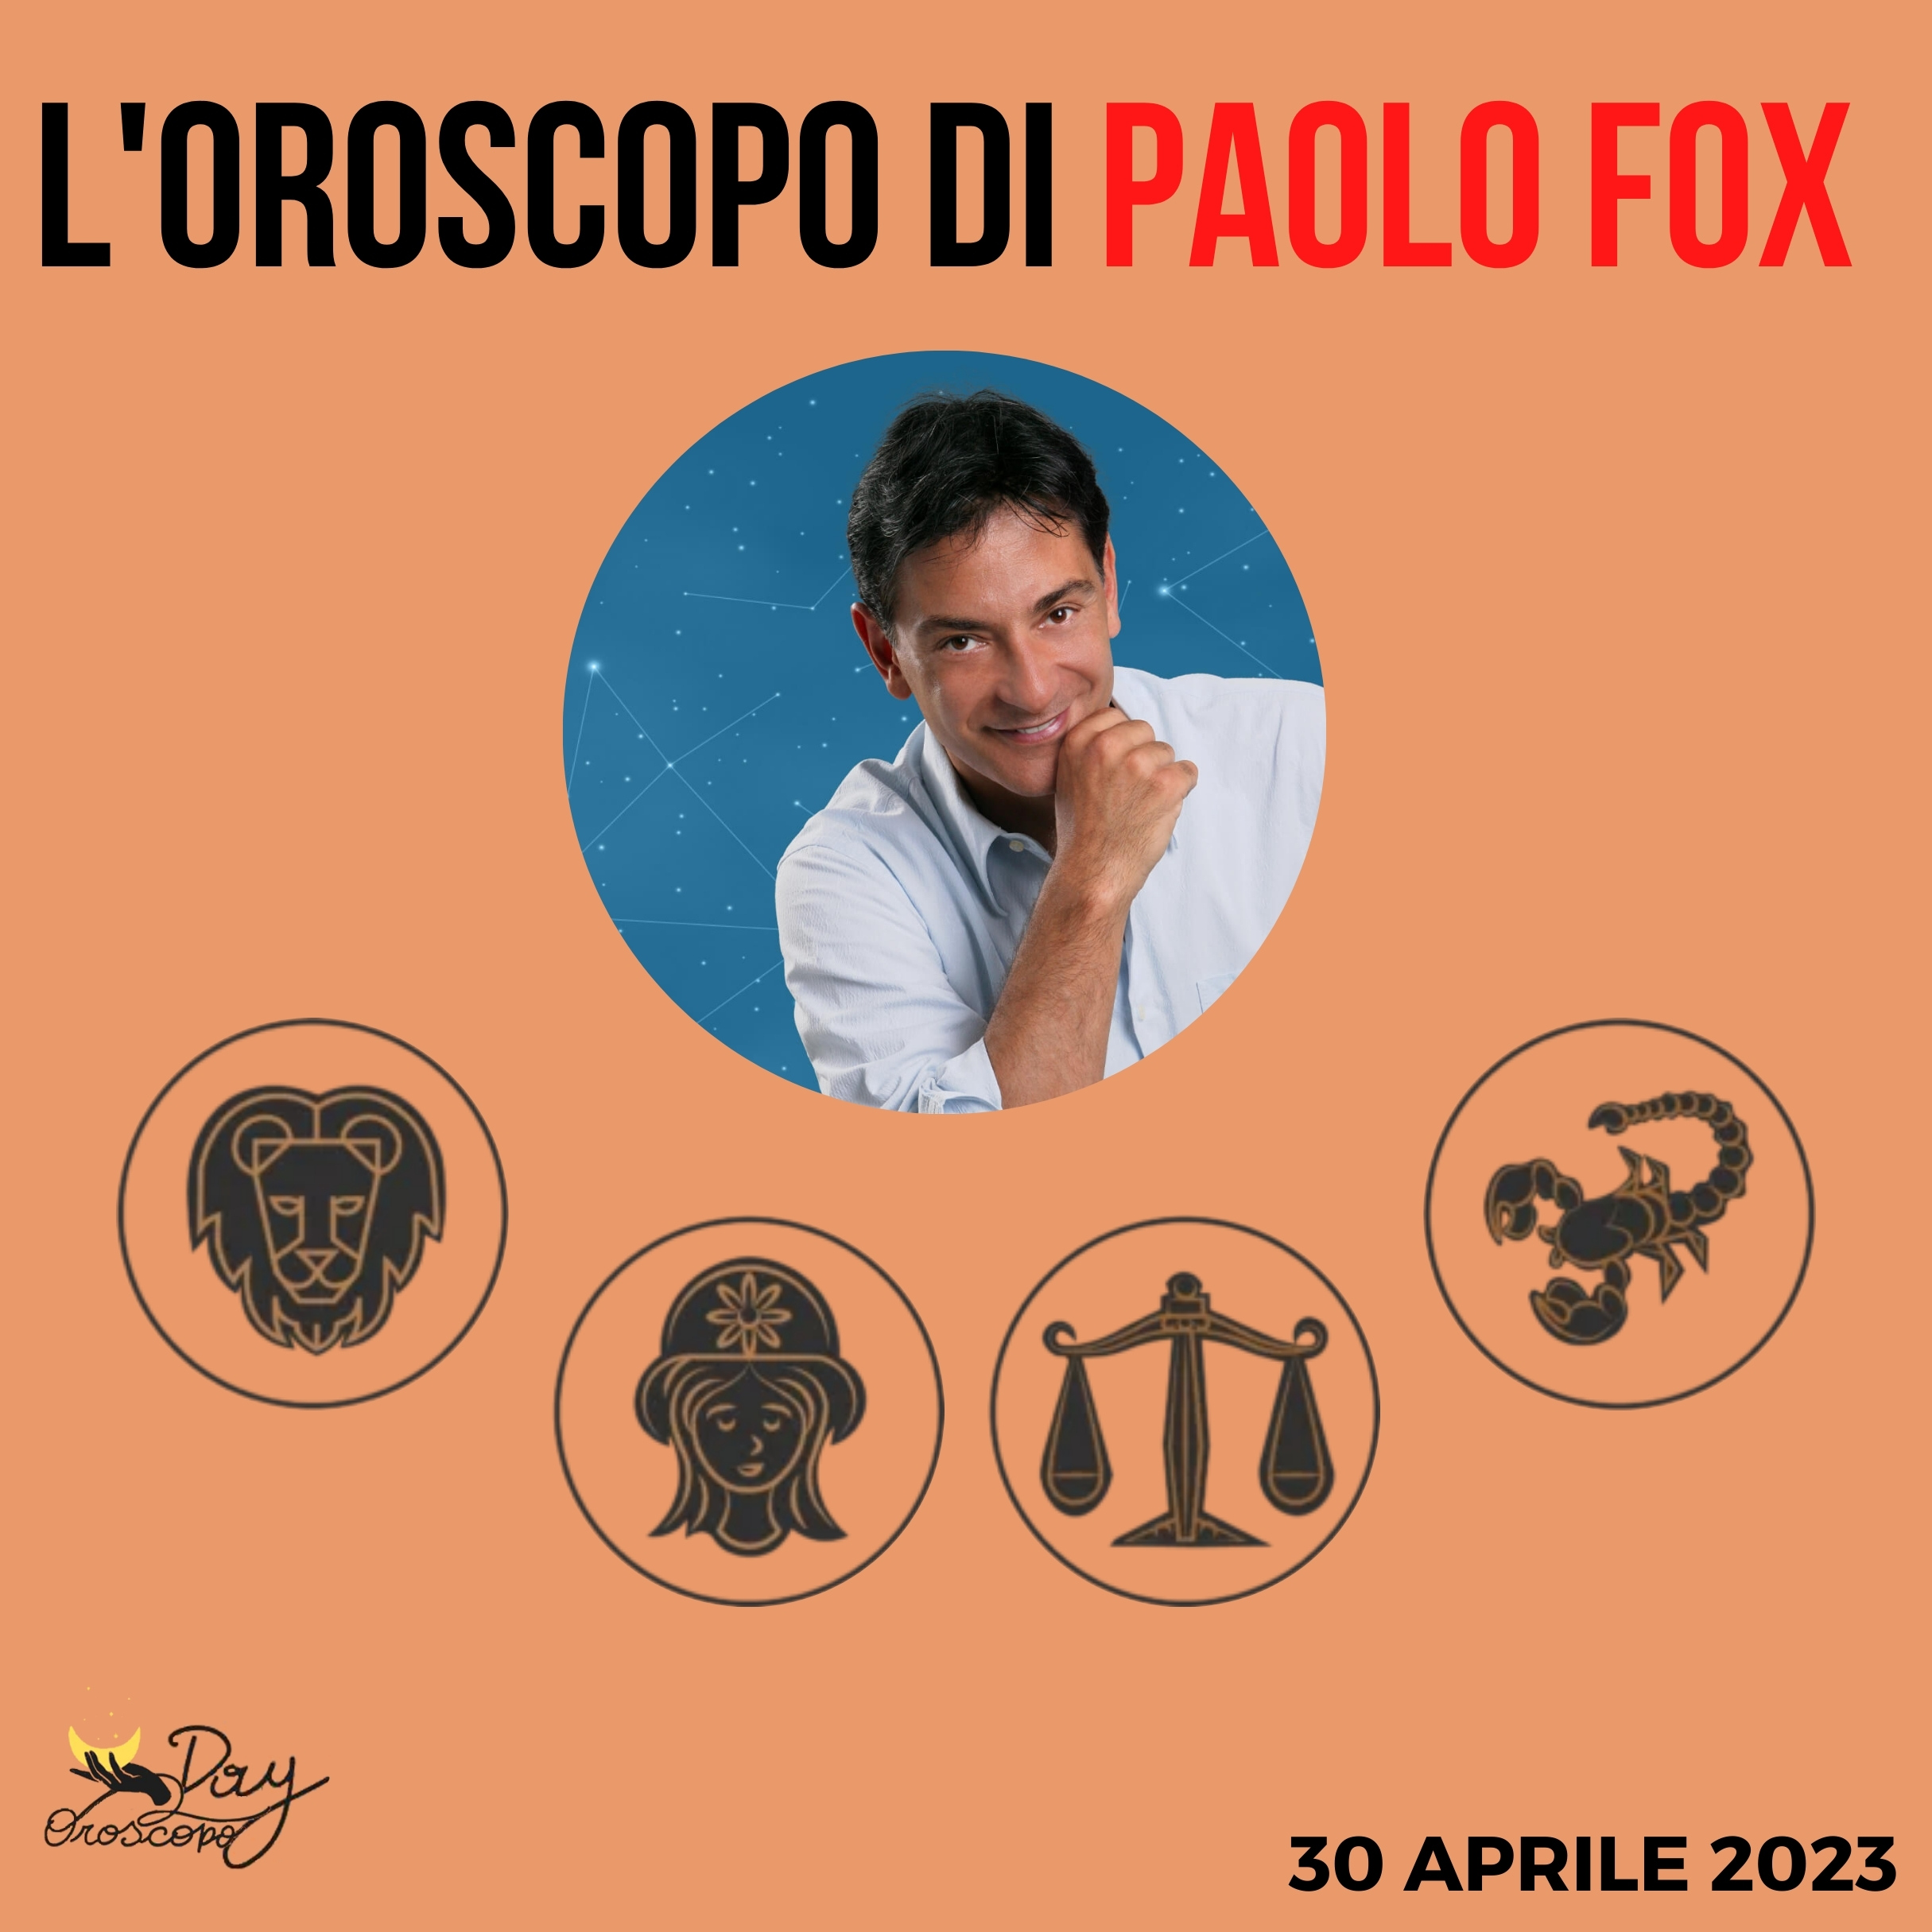 Oroscopo oggi domani Paolo Fox 30 aprile Leone Vergine Bilancia Scorpione